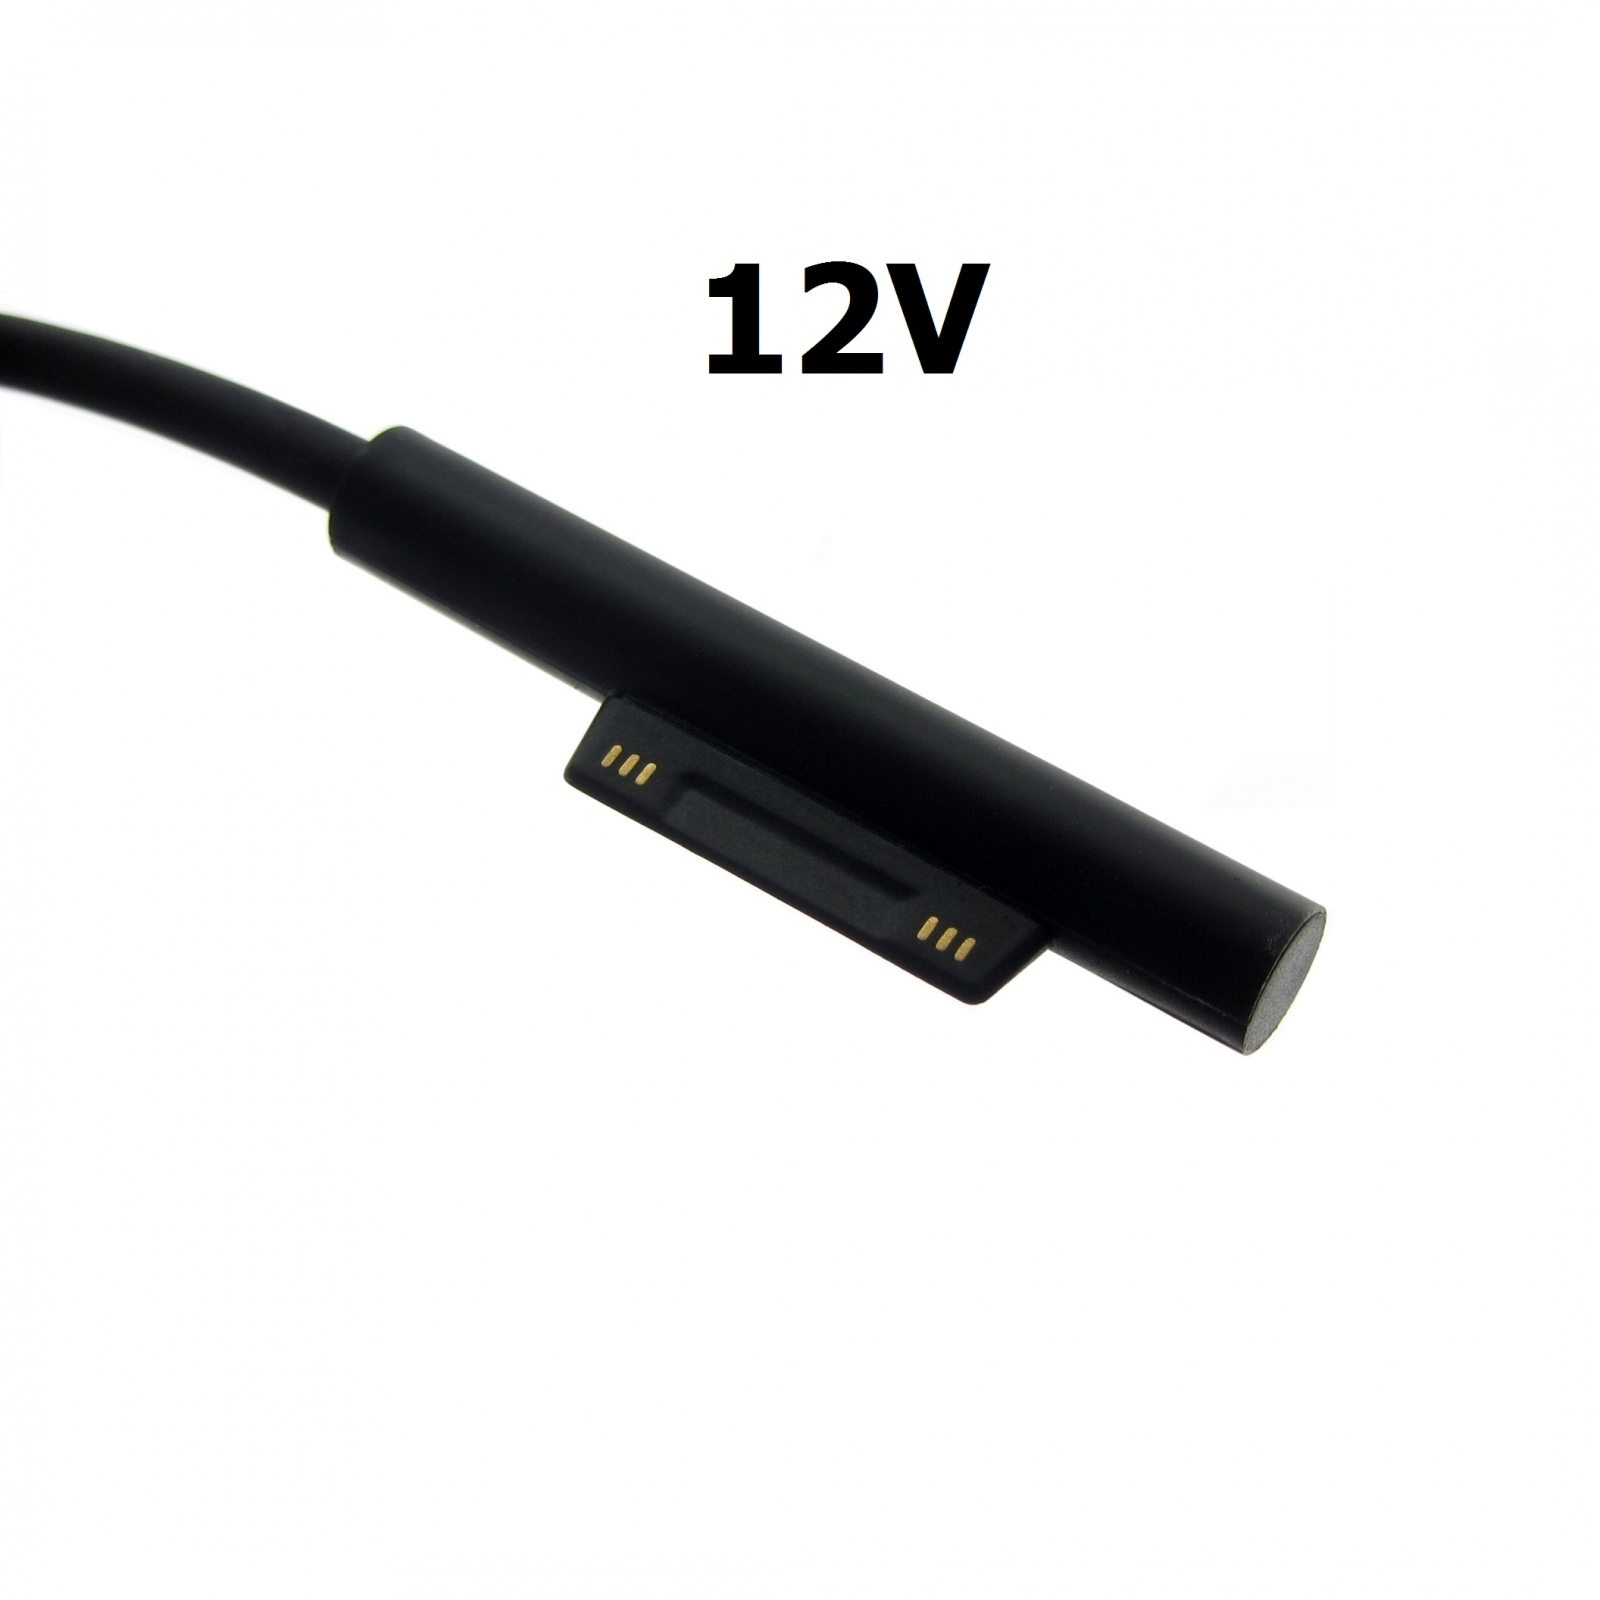 12V, für Netzteil, Pro 3 31 1625 Notebook-Netzteil Model Surface MICROSOFT MTXTEC 2.58A Watt